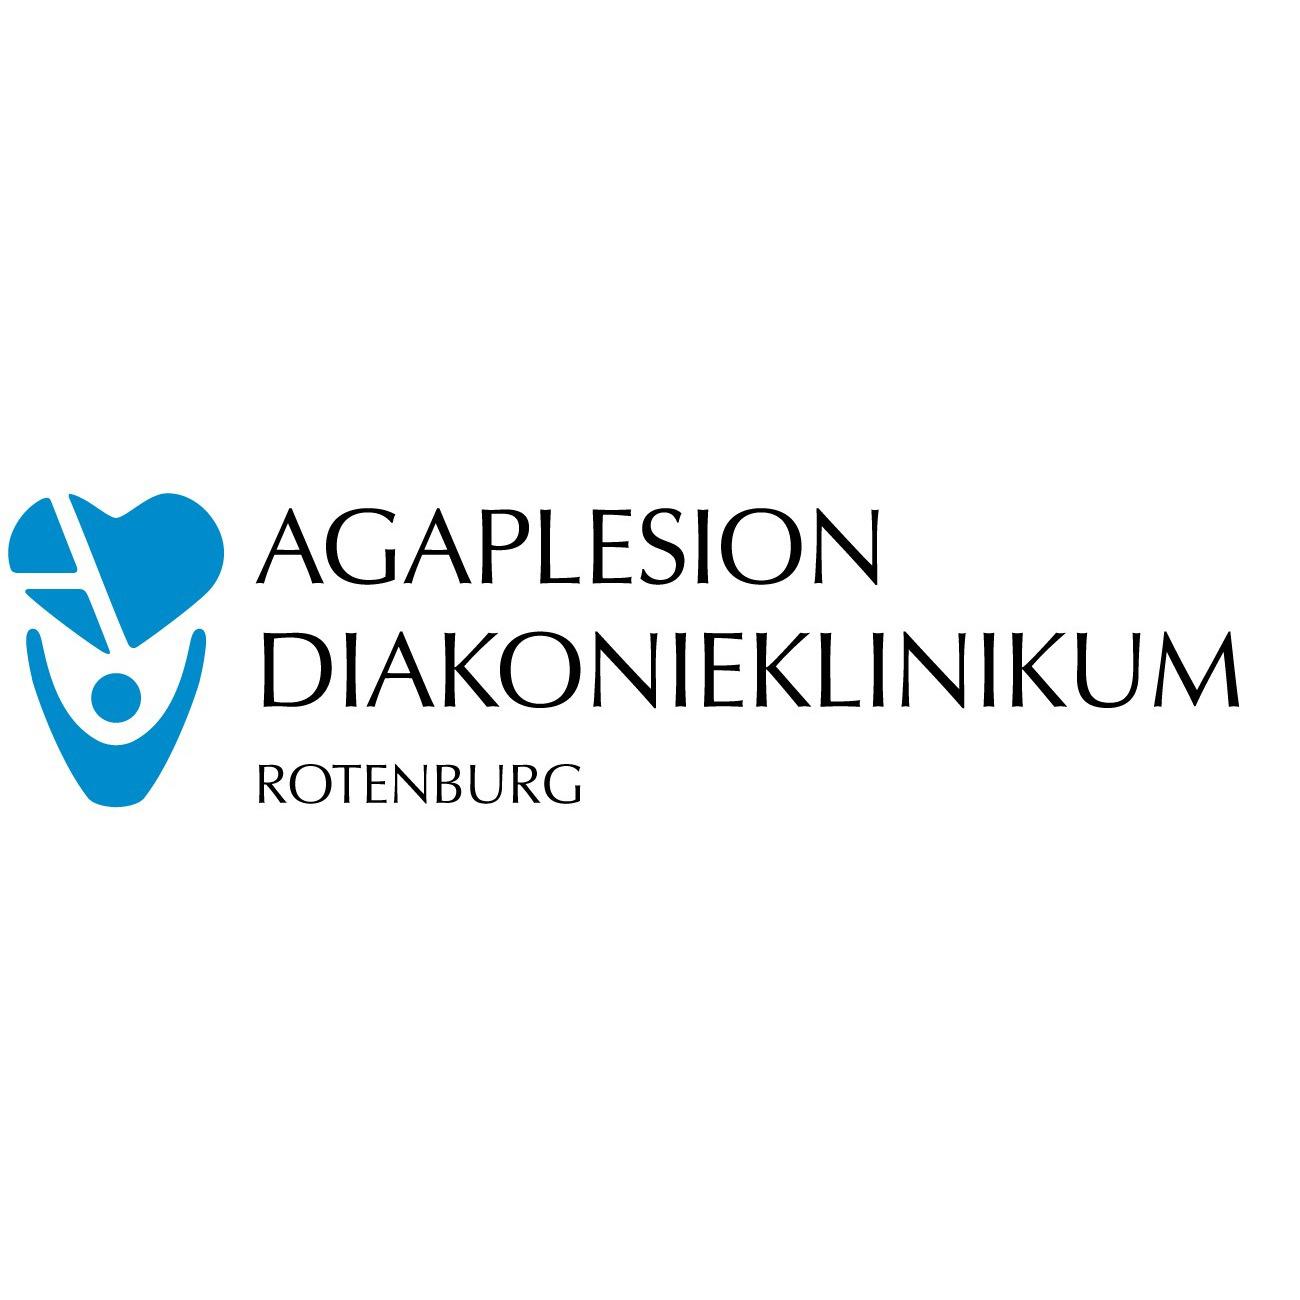 AGAPLESION DIAKONIEKLINIKUM ROTENBURG in Rotenburg Wümme - Logo